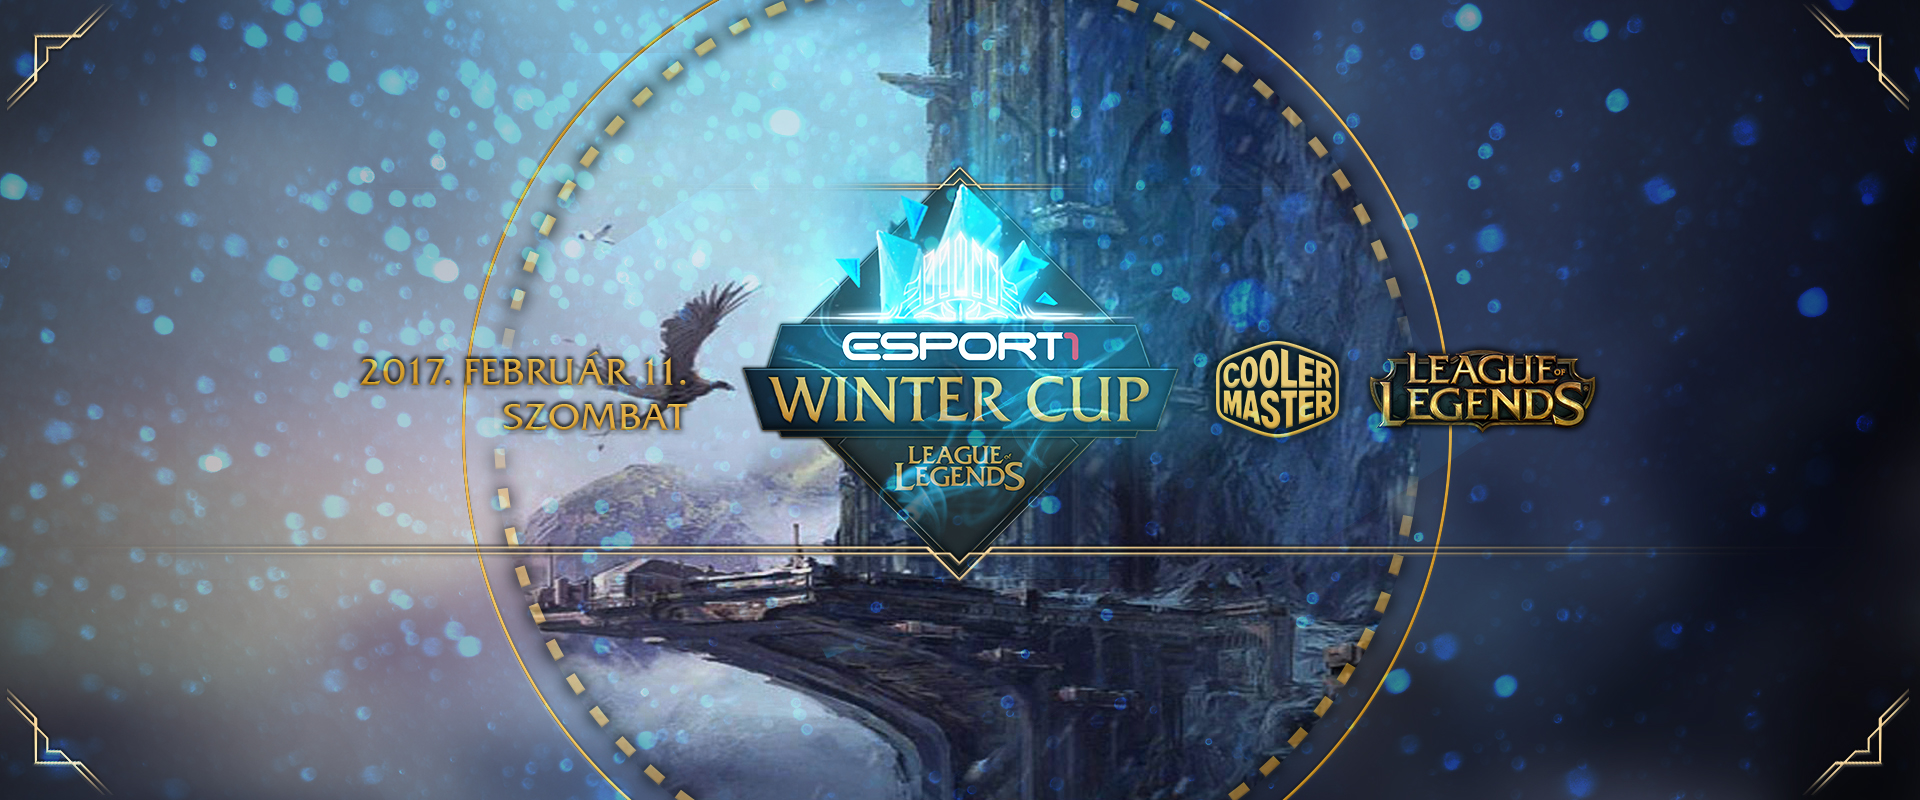 Minden hely elkelt az Esport1 Winter Cup-ra!